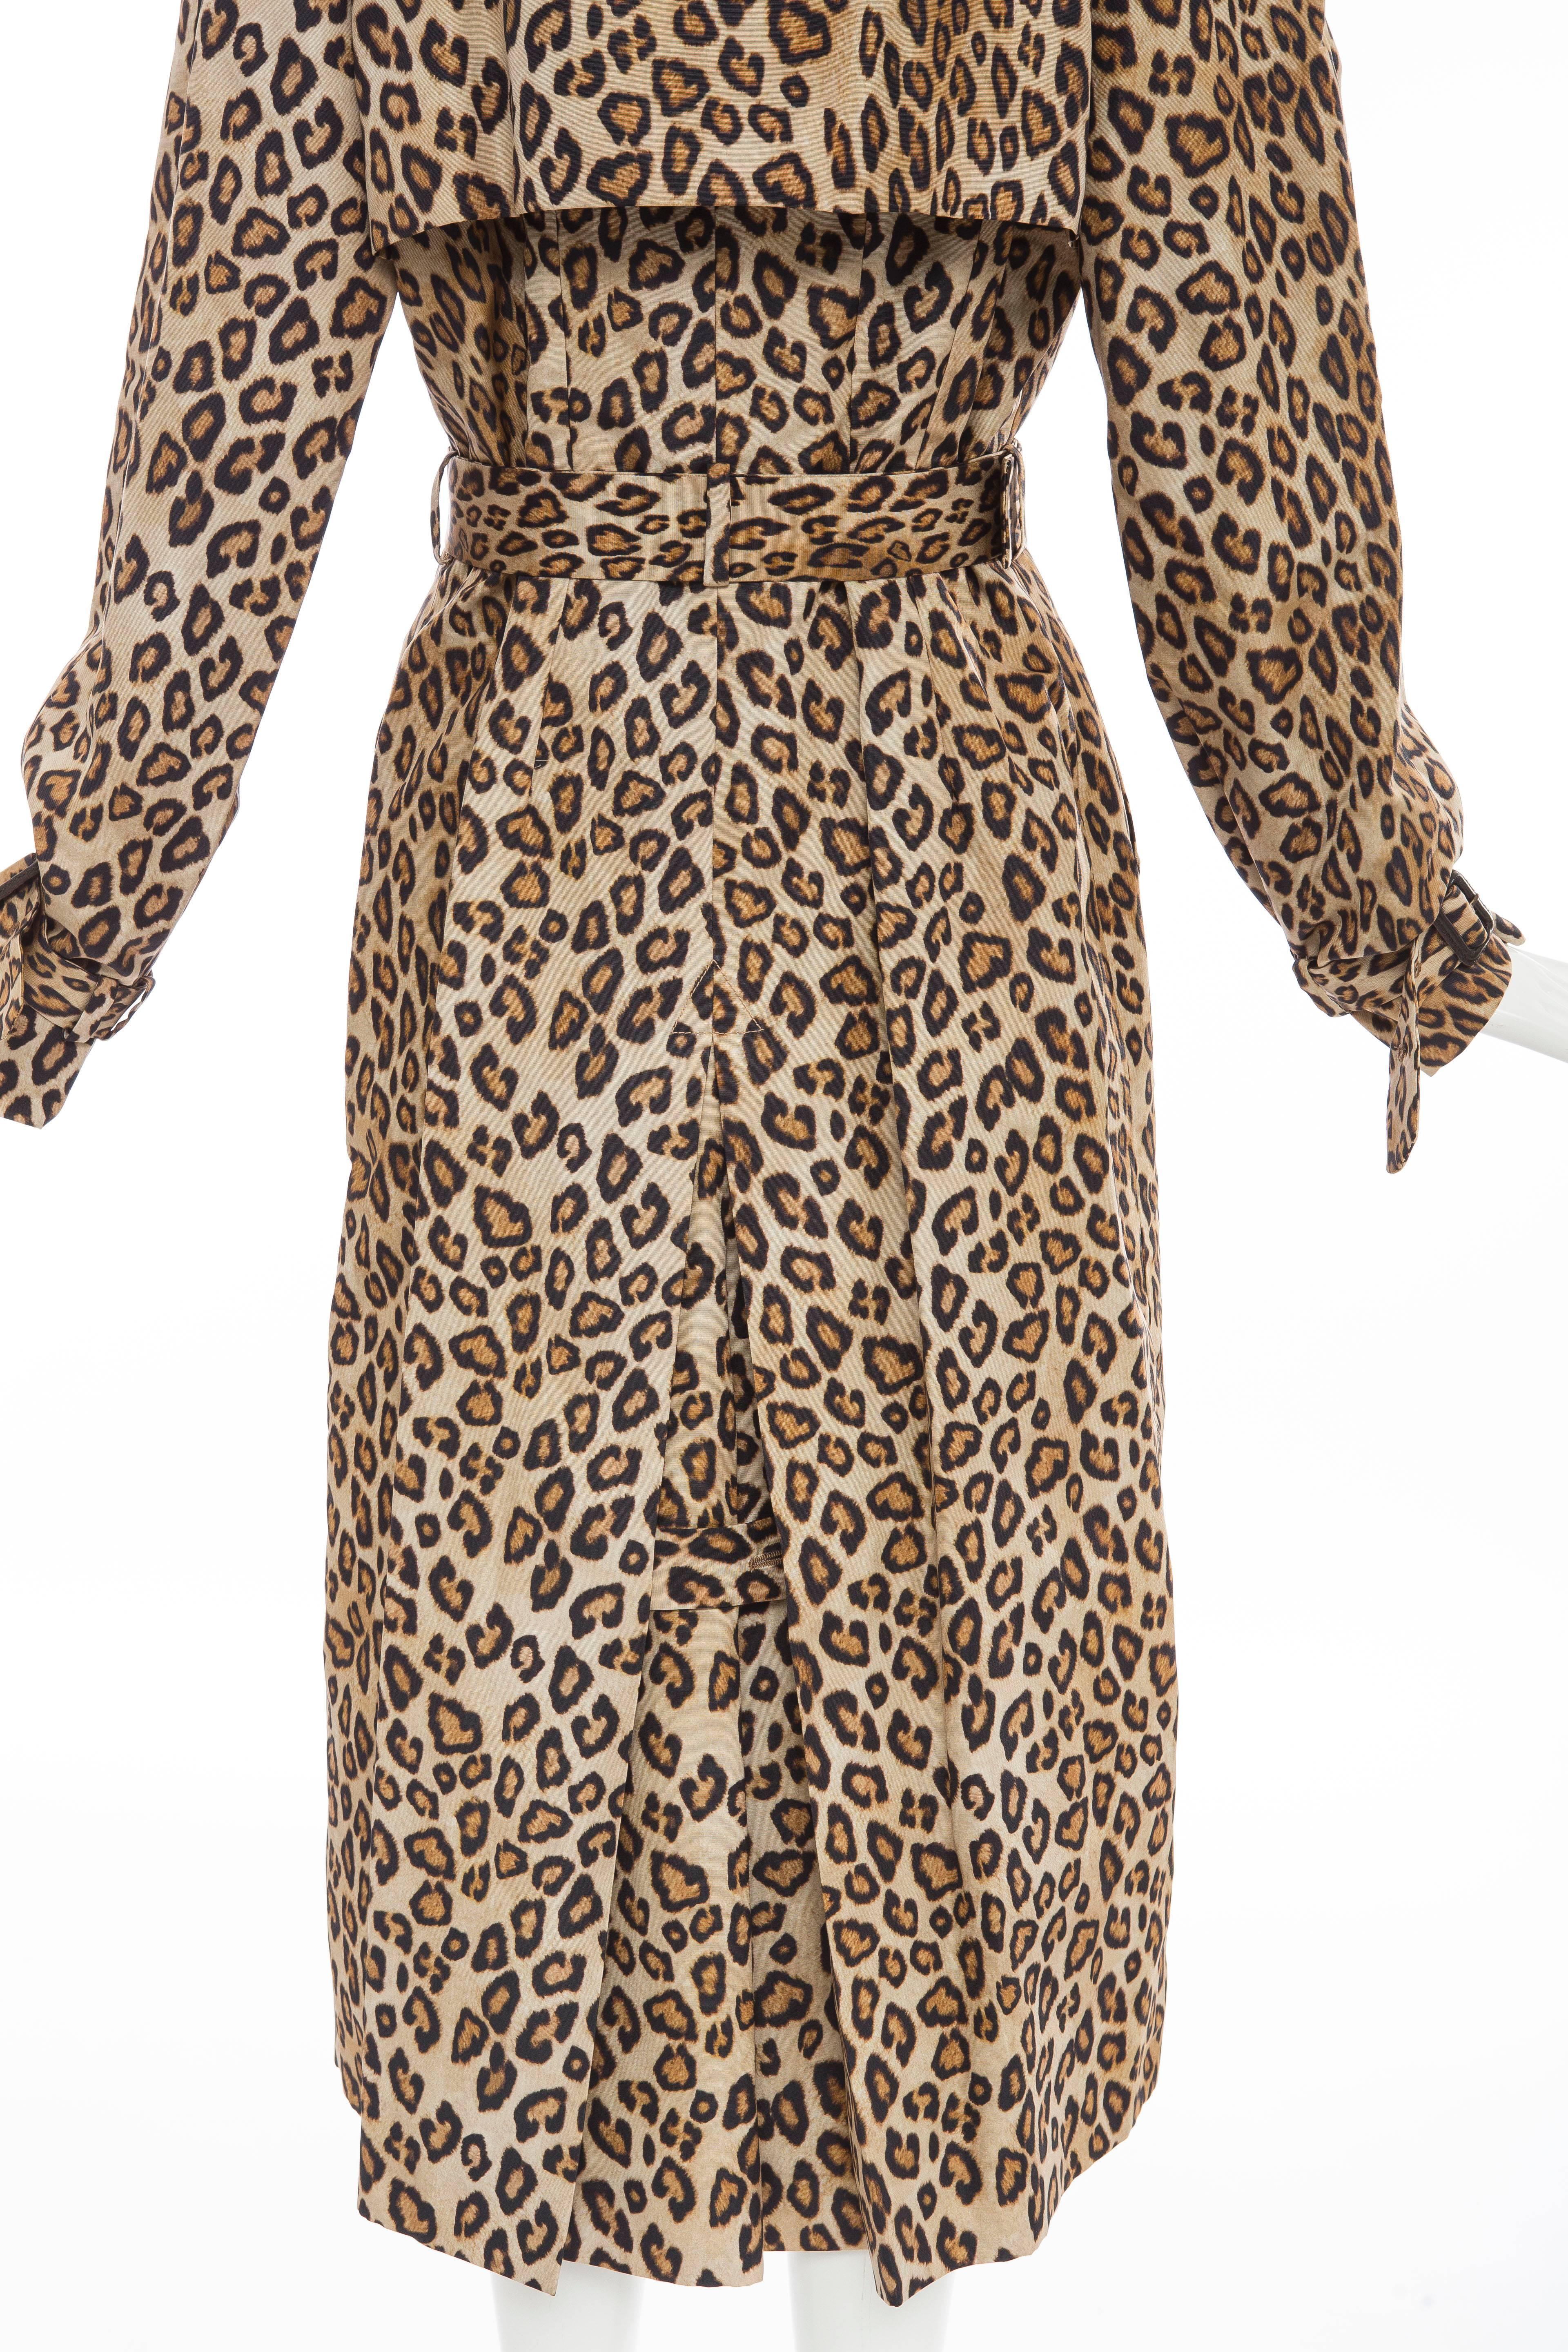 Alexander McQueen Silk Leopard Print Trench Coat, Autumn-Winter 2005 3